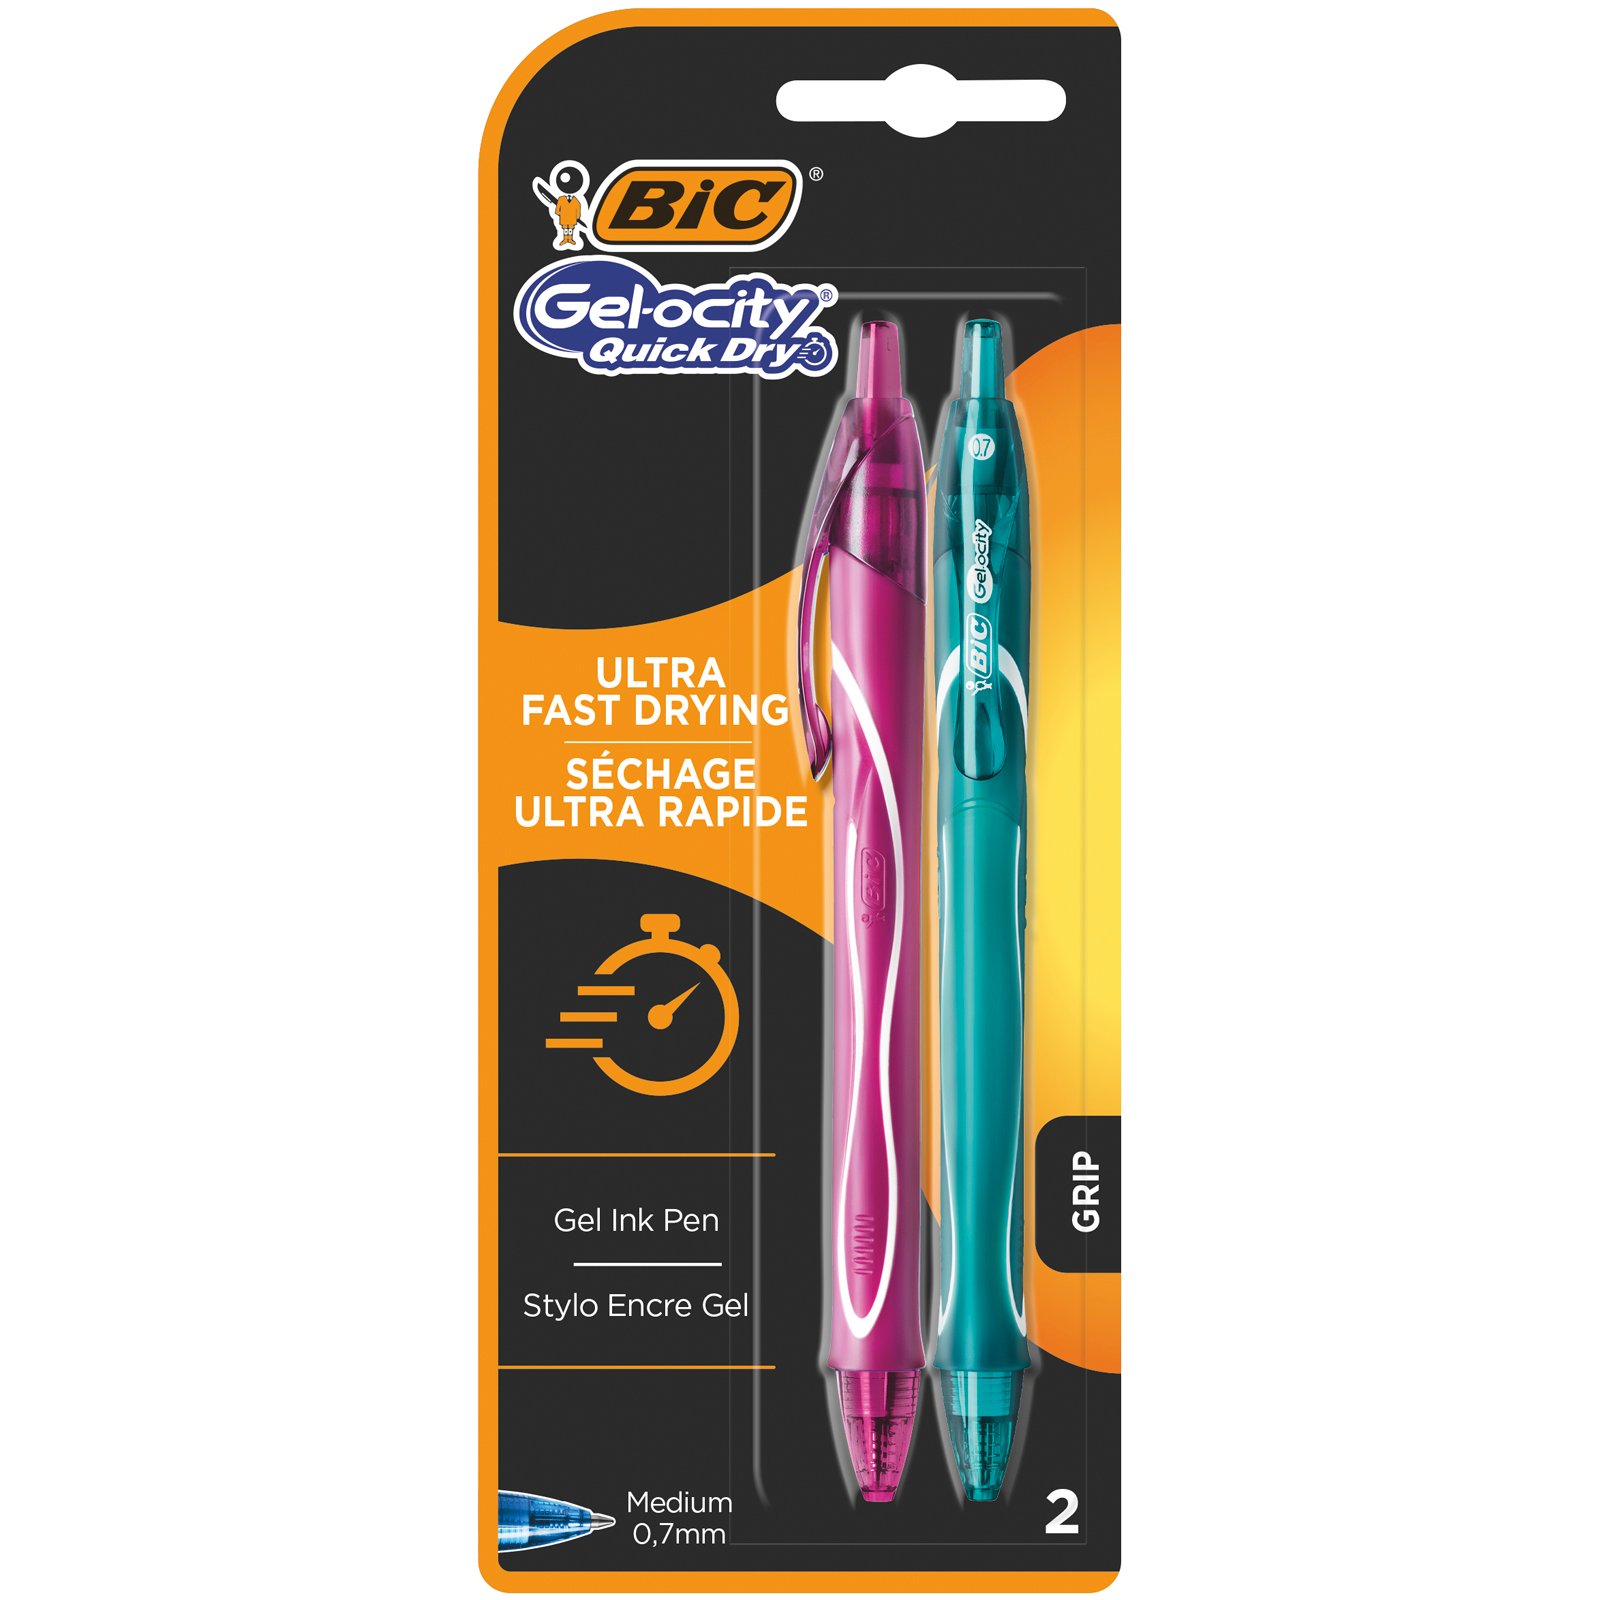 BIC Gel-Ocity QuickDry, Penne Multicolore Gel A Scatto e Ricaricabile  (Punta 0.7mm), Confezione da 2